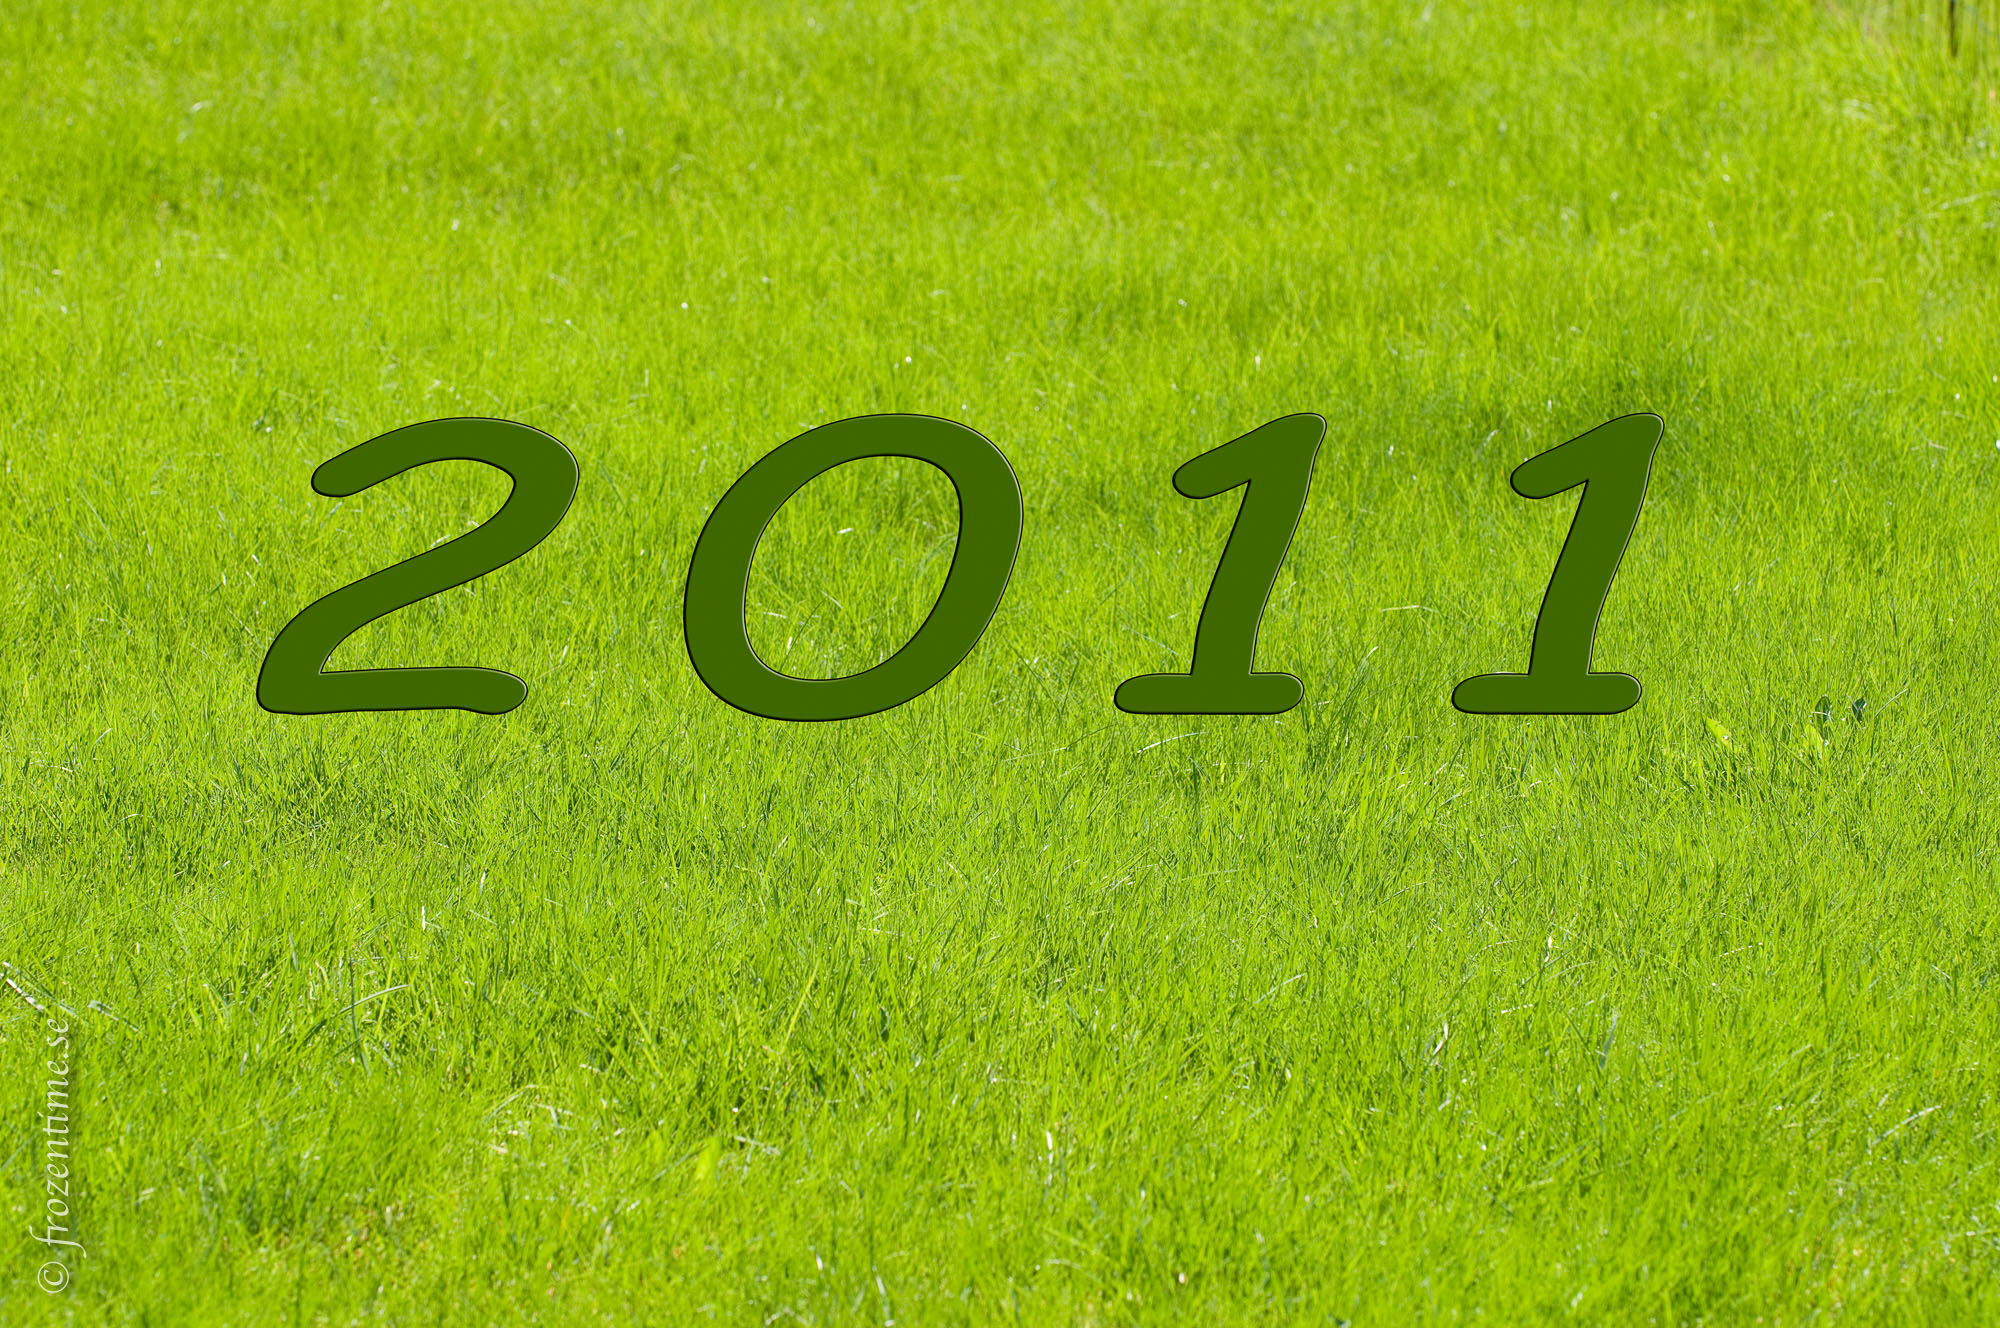 date_2011_grass.jpg